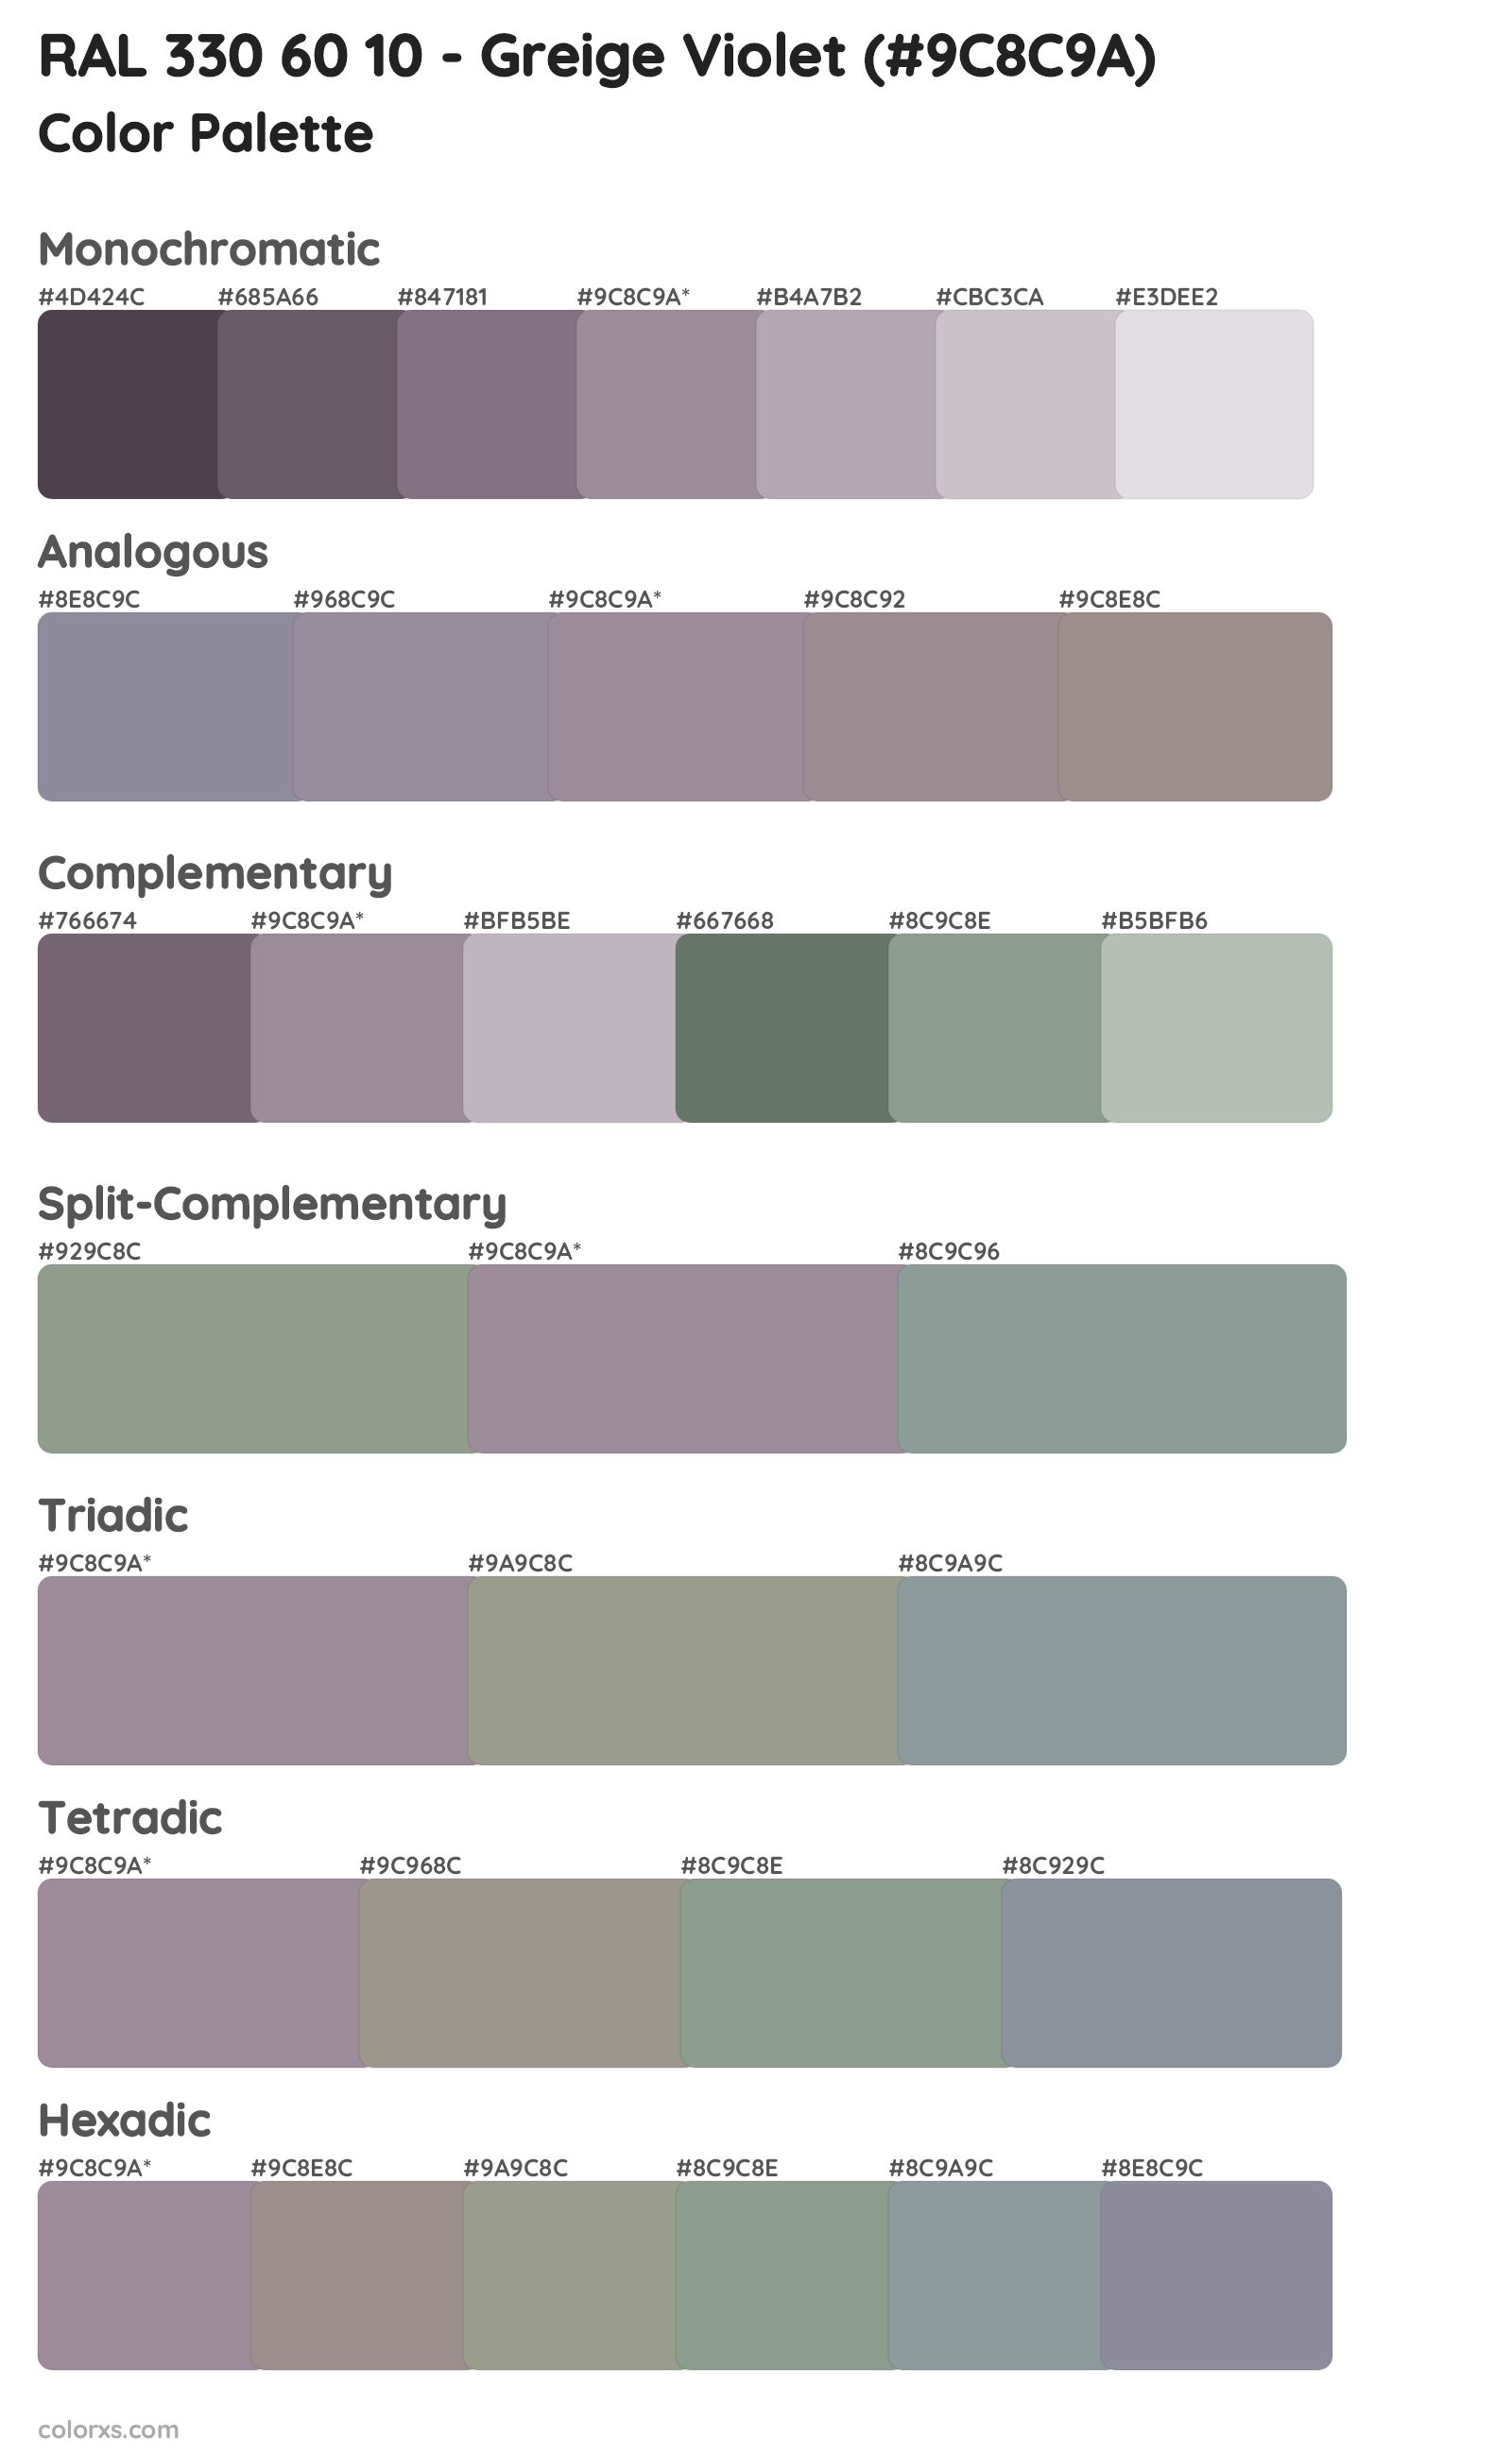 RAL 330 60 10 - Greige Violet Color Scheme Palettes